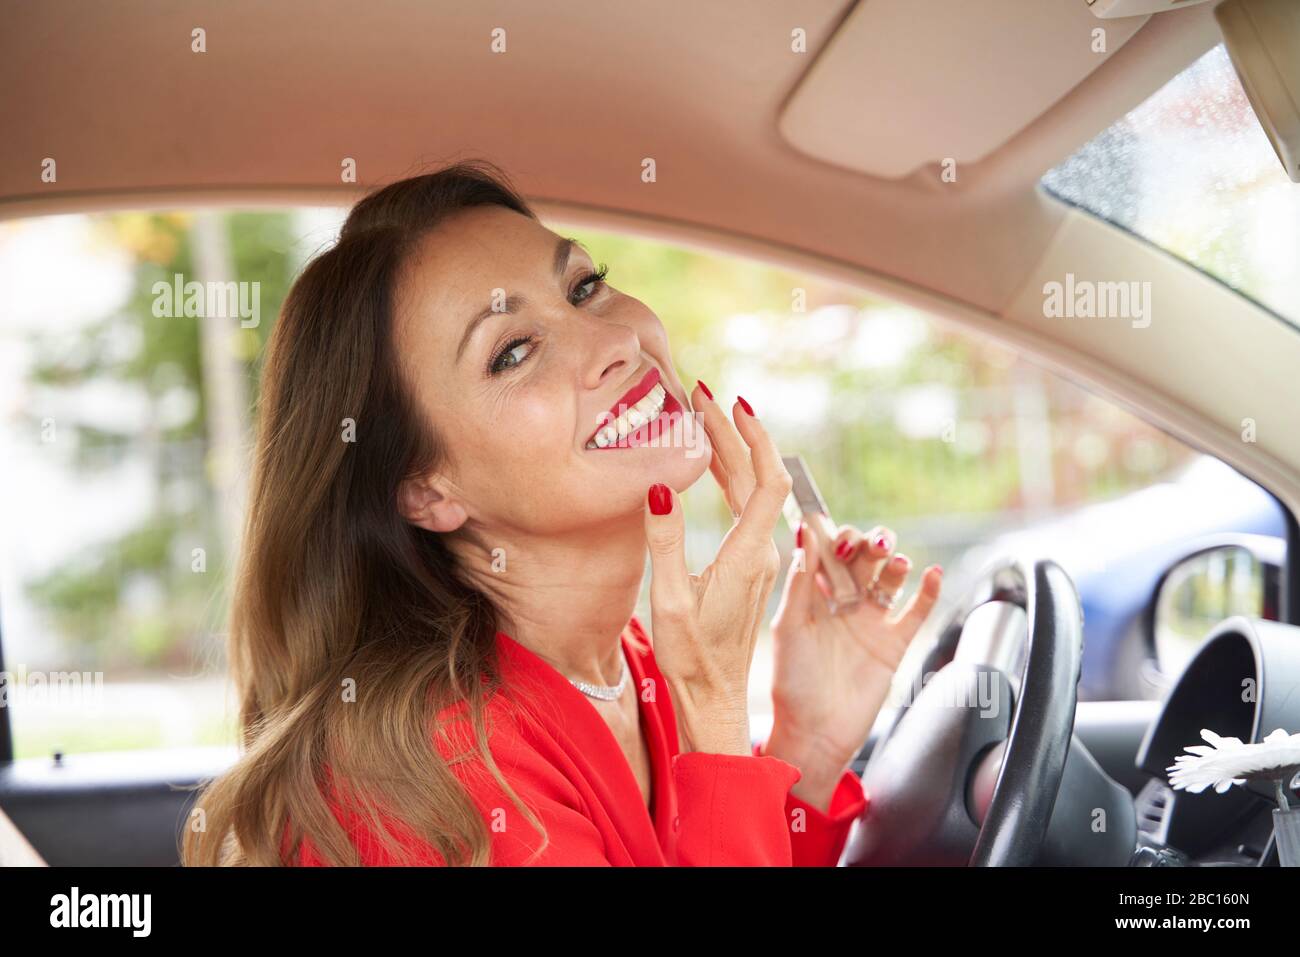 Porträt von glücklichen reifen Frau mit roten Lippen und Nägel im Auto Stockfoto